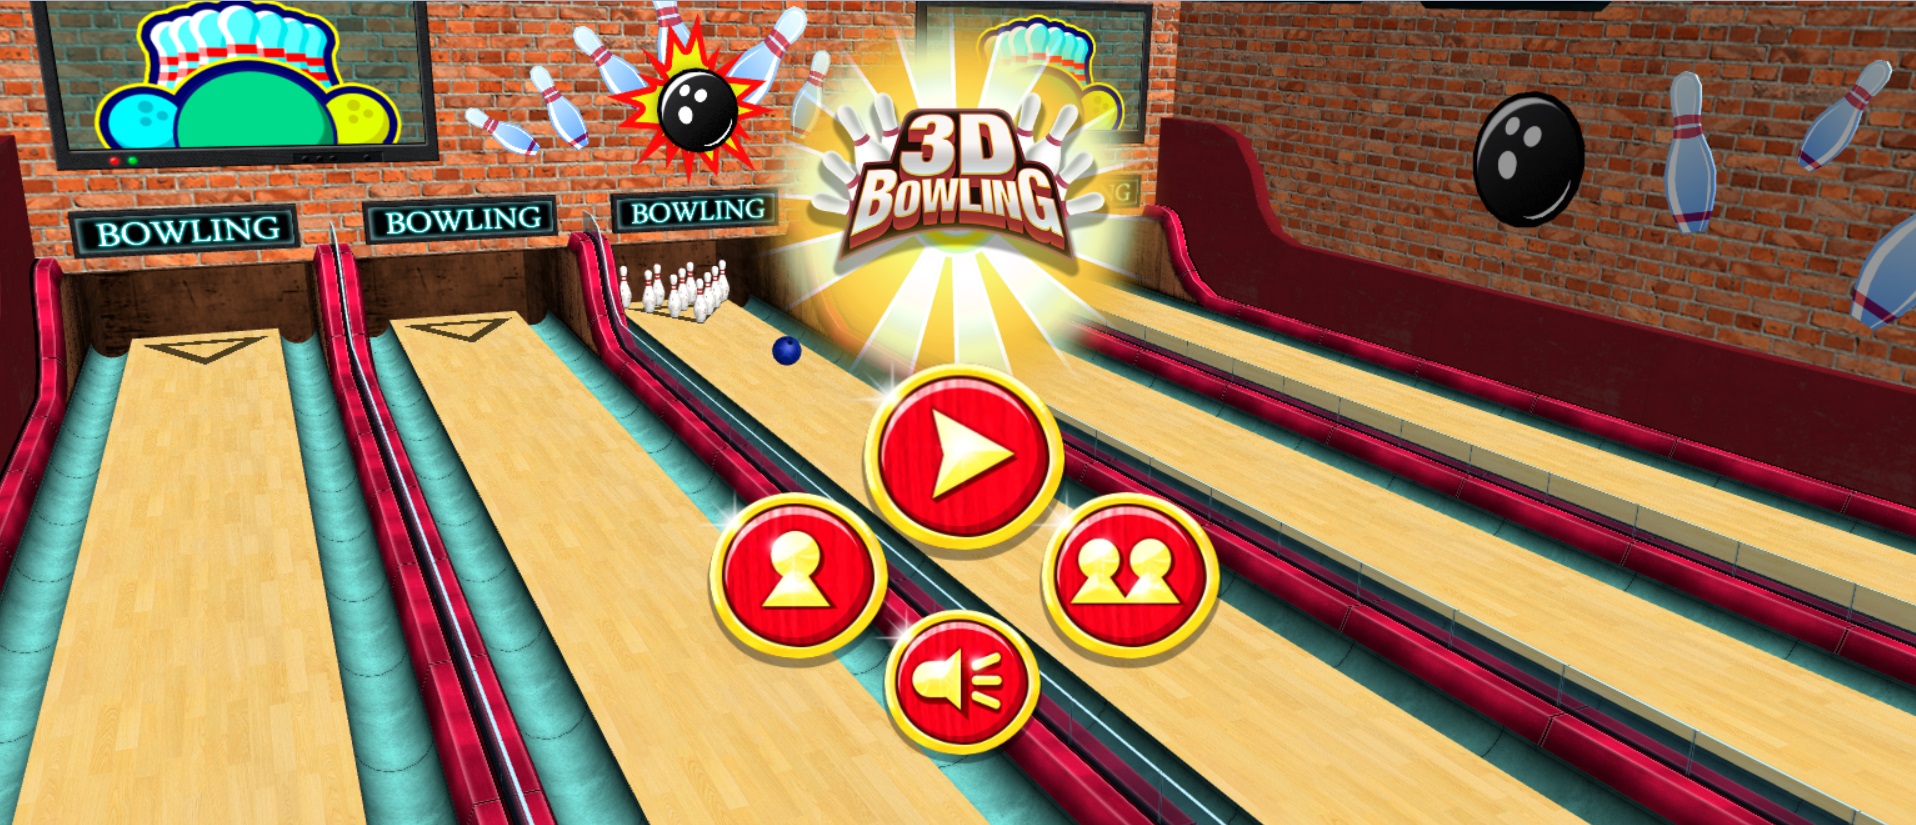 3D Bowling – Bóng Gỗ 3D